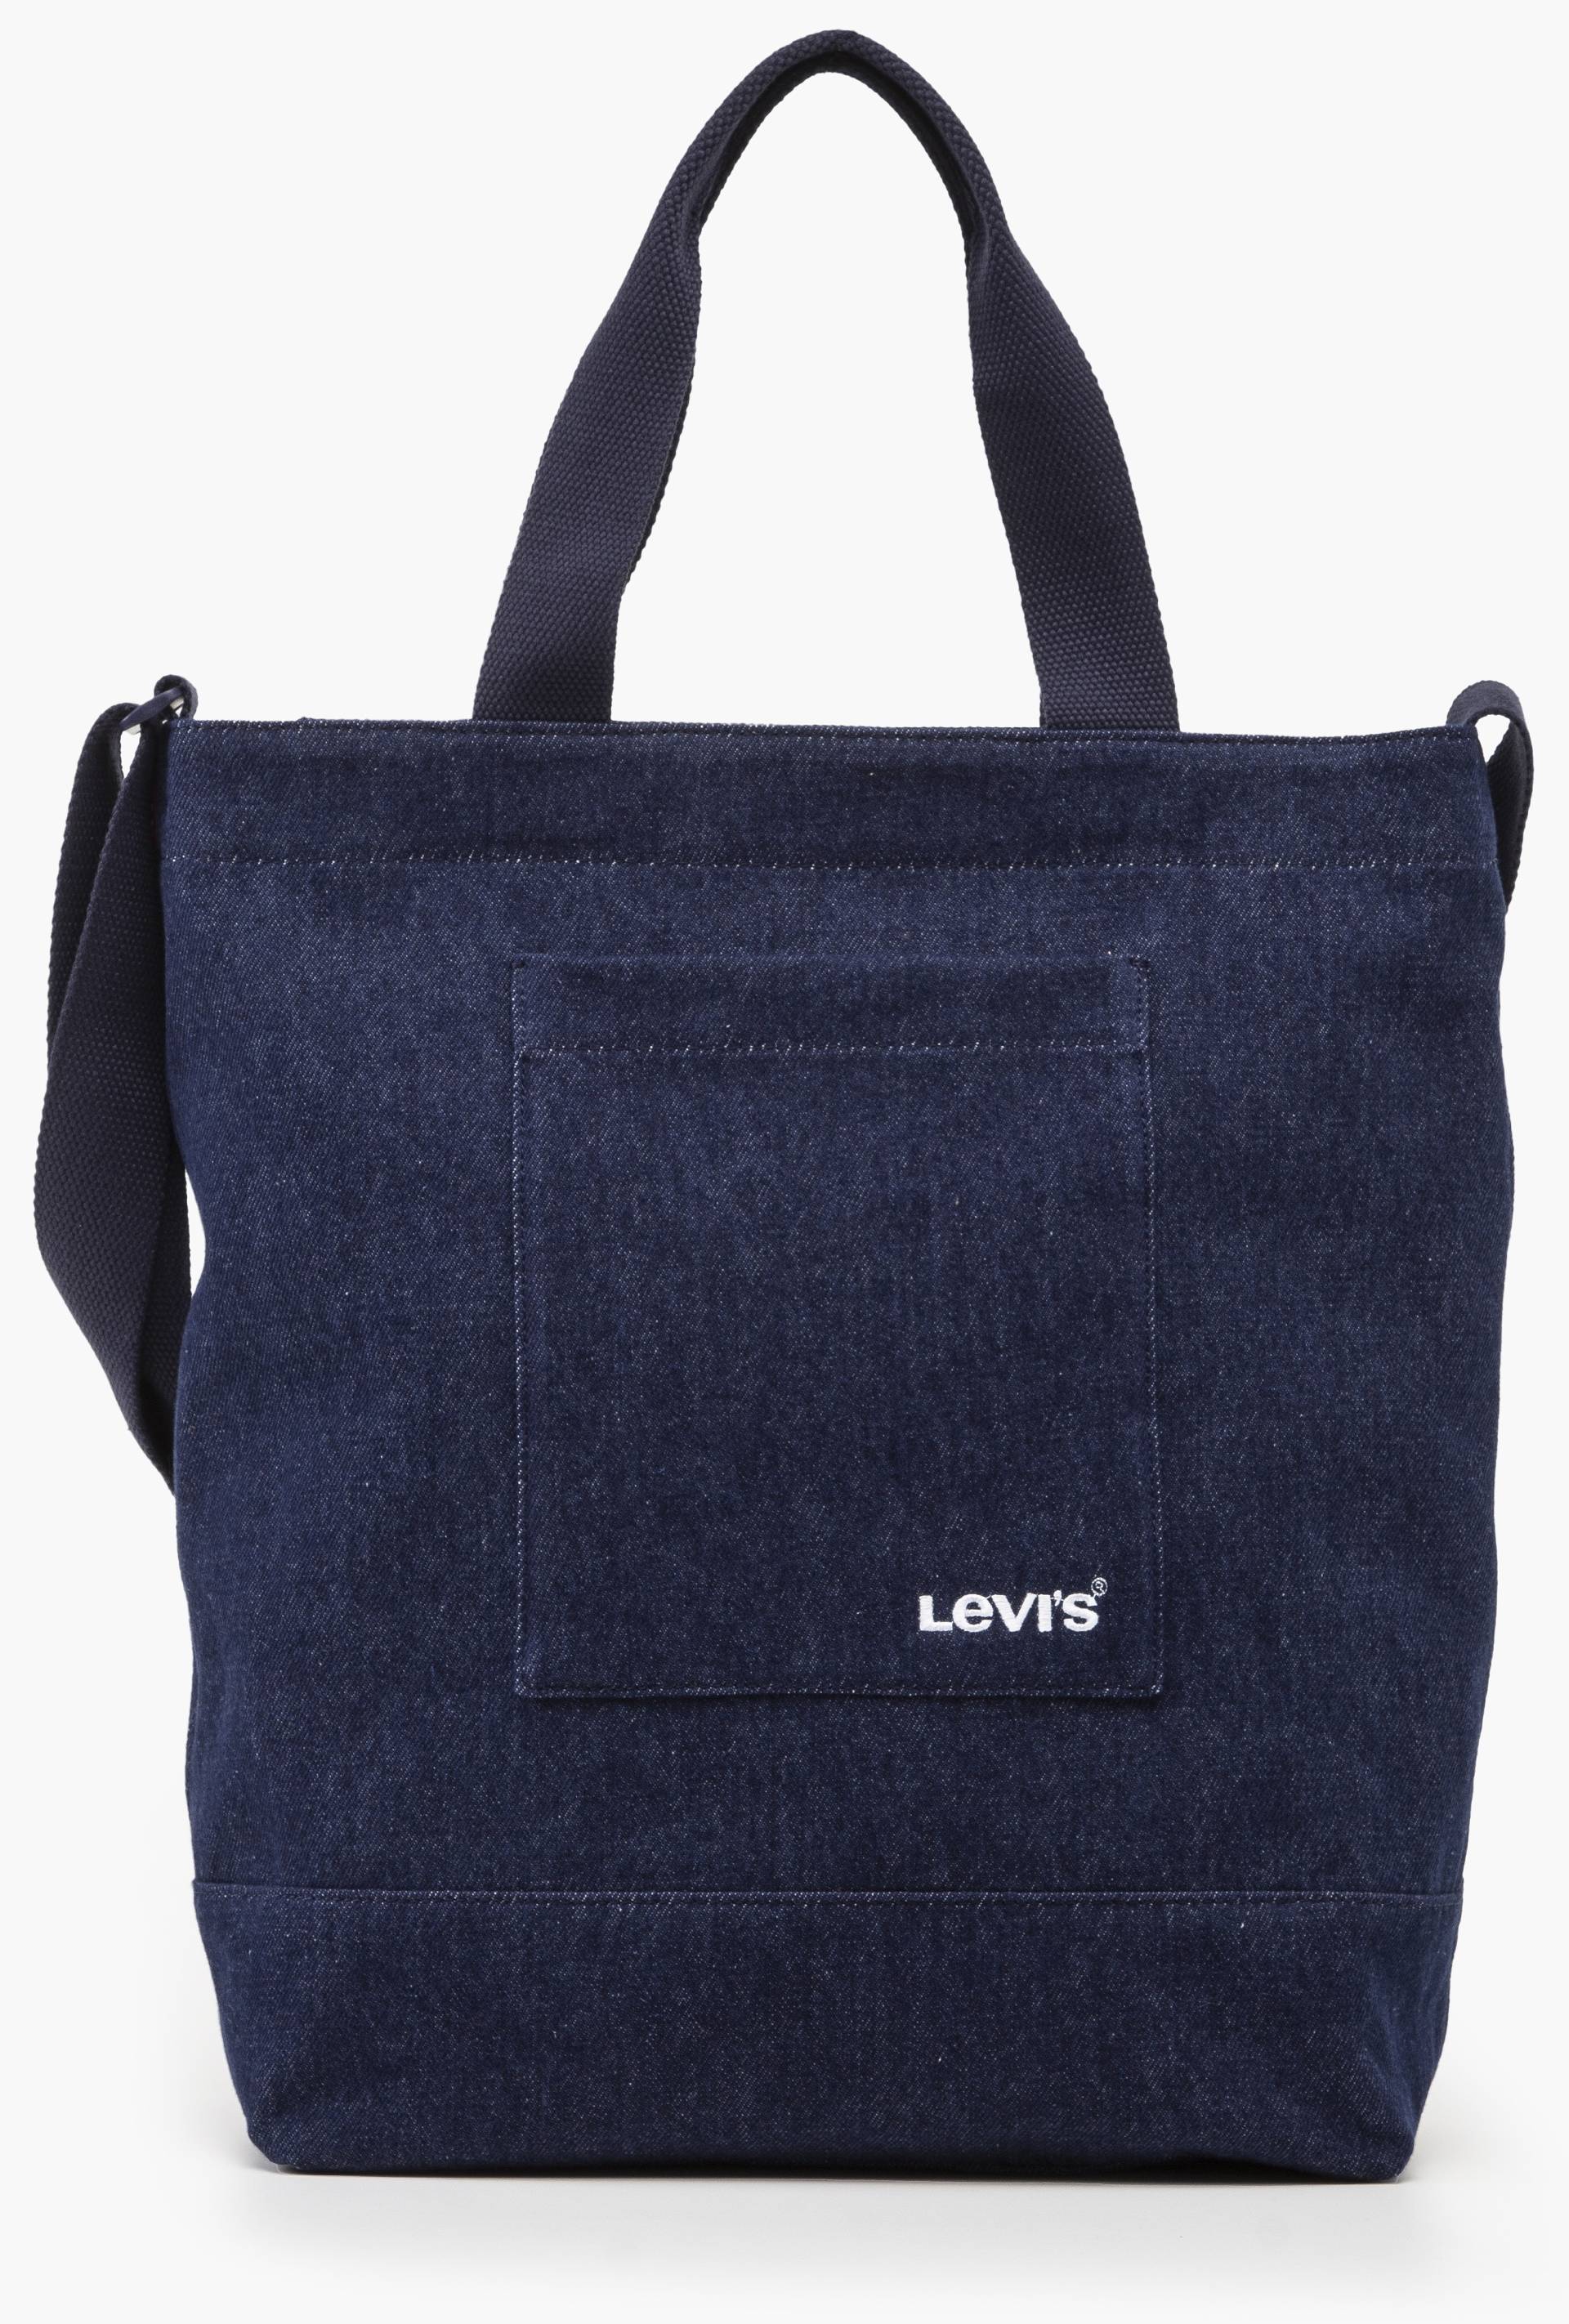 Levi's® Shopper, in Jeans-Optik Henkeltasche Schultertasche Umhängetasche von Levi's®